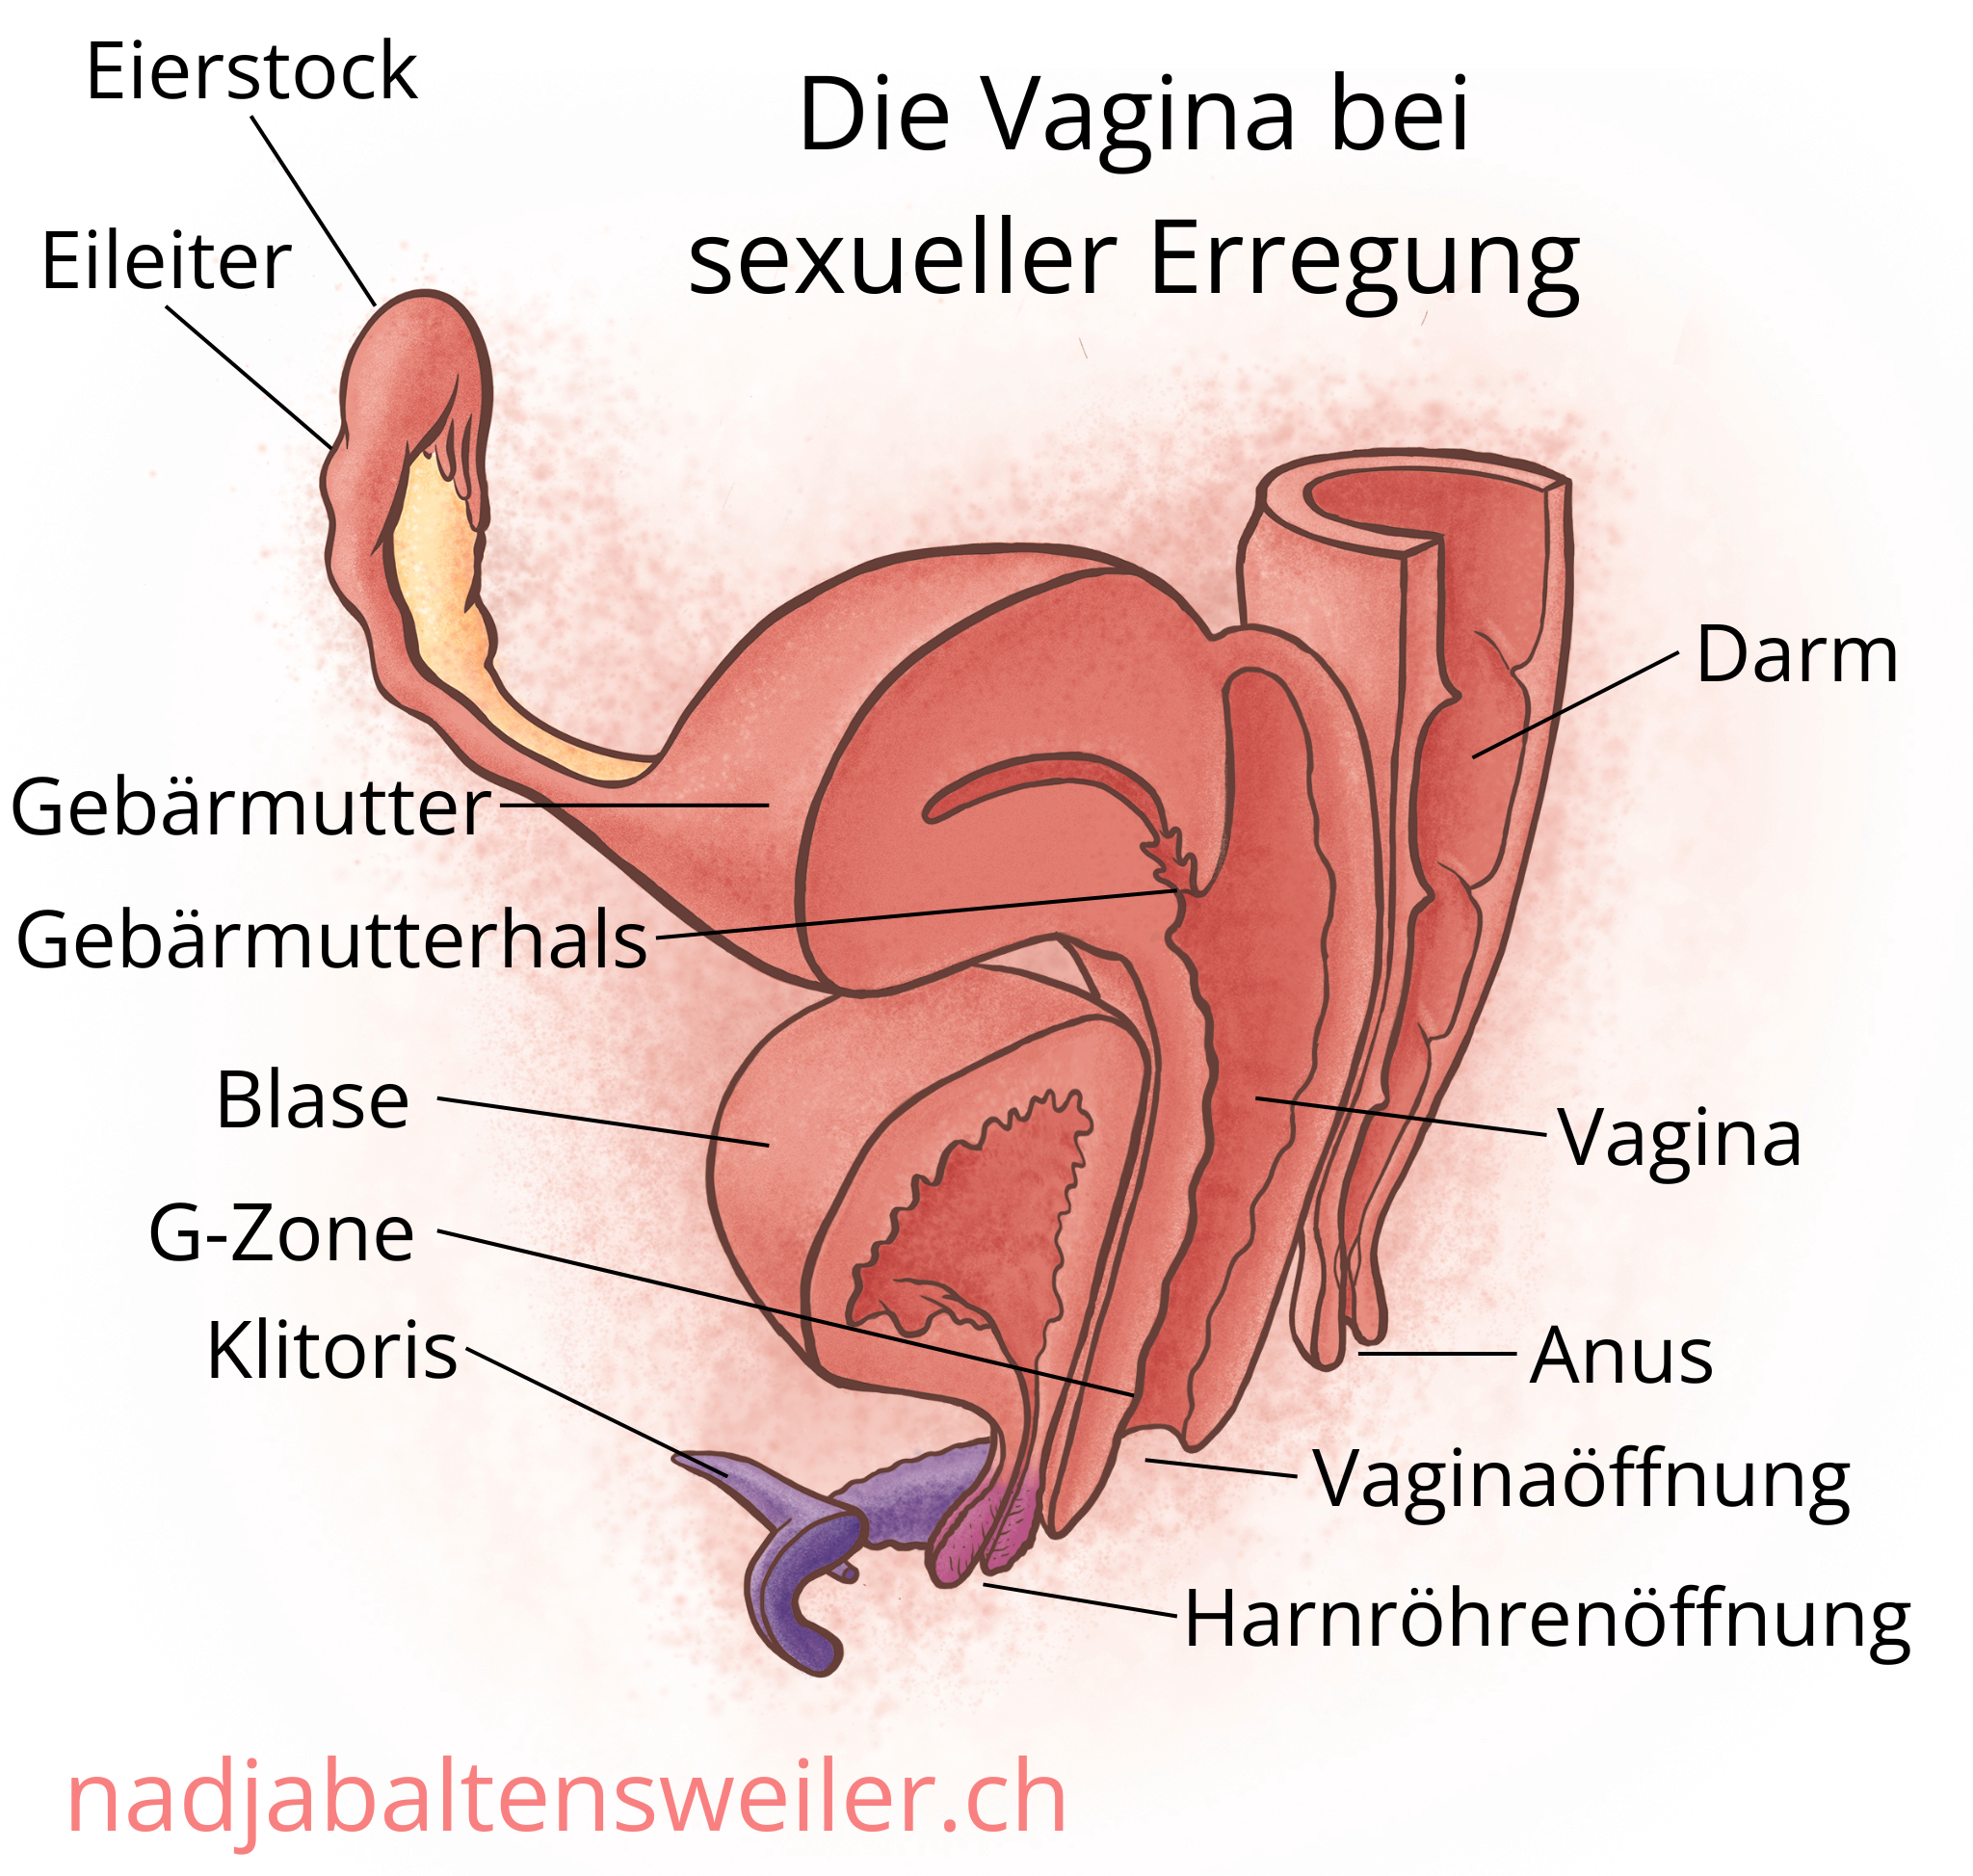 Das Bild zeigt einen Längsschnitt durch Geschlechtsorgane bei sexueller Erregung. Ganz vorne ist die Klitoris mit ihren Schenkeln, dahinter ist die Harnröhrenöffnung und dahinter die Vaginaöffnung. Zuhinterst kommt der Anus. An den Anus schließt sich nach oben hin der Darm an. Die Vagina ist geweitet. Am oberen Ende der Vagina liegt der Gebärmutterhals, der in die Gebärmutter führt. Seitlich der Gebärmutter schliesst sich der Eileiter und der Eierstock an. Oberhalb der Harnröhrenöffnung liegt die Blase. Sie liegt ausserdem vor der Vagina und unterhalb der Gebärmutter.